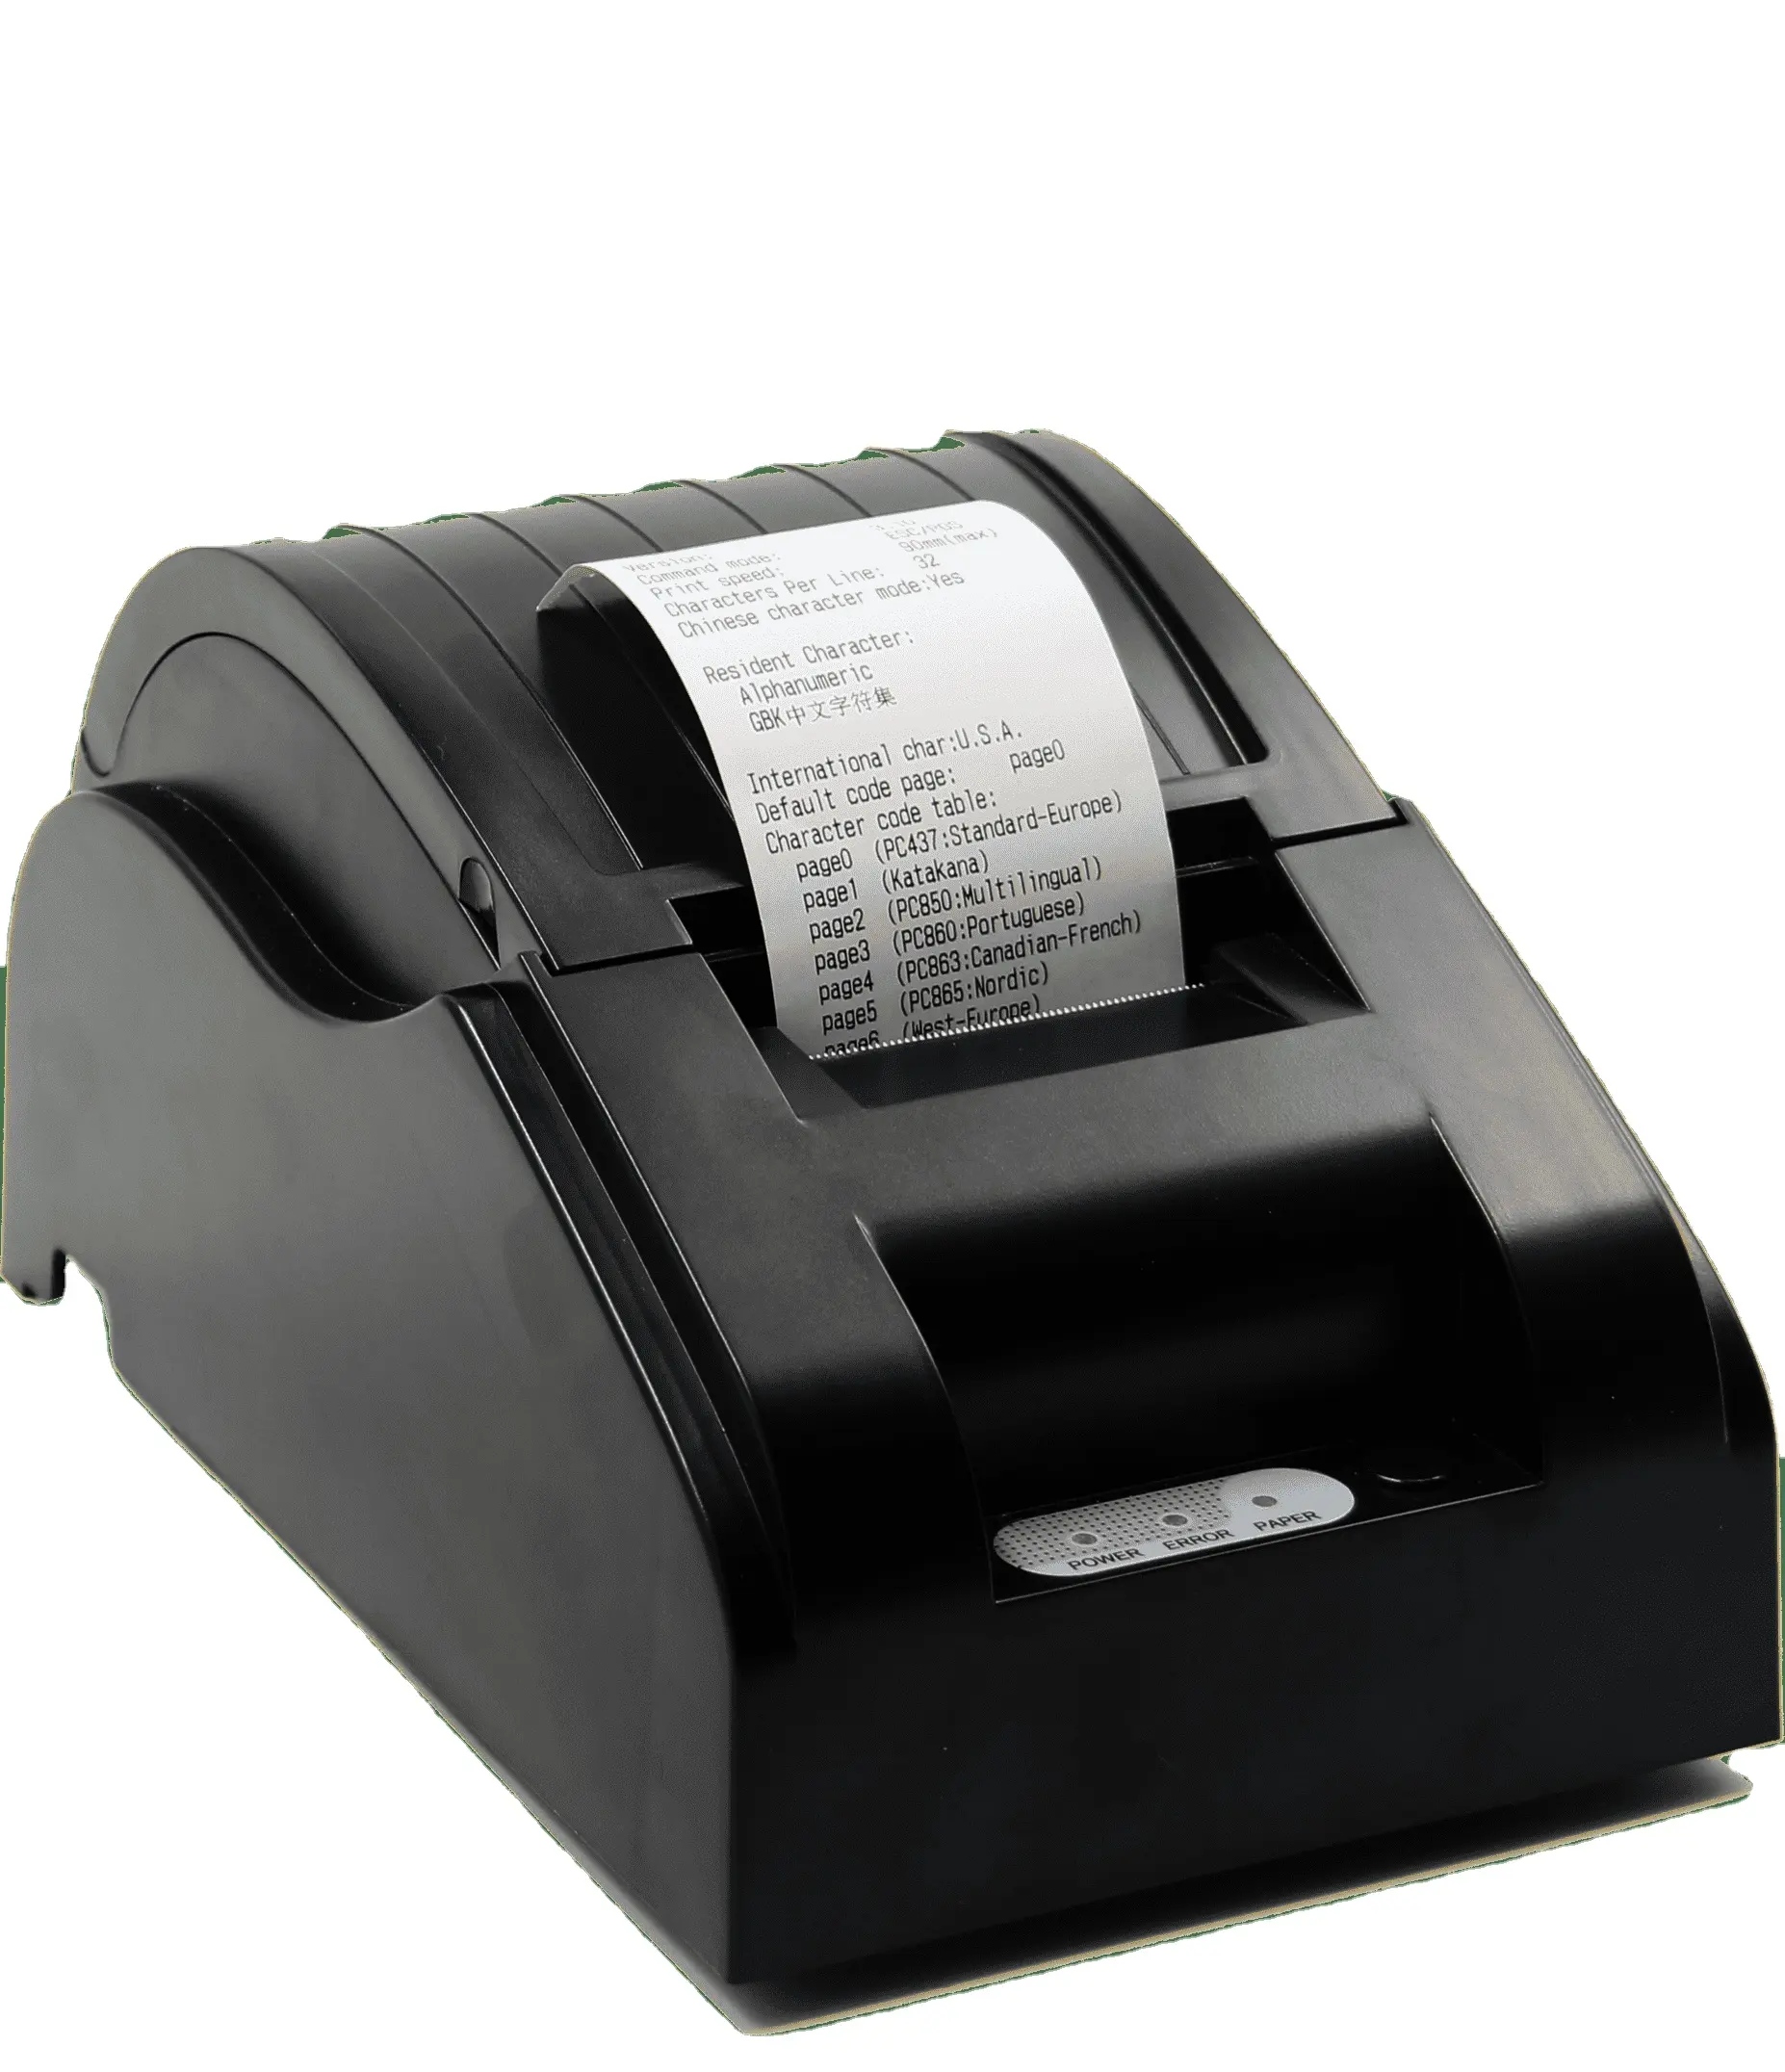 เครื่องพิมพ์ความร้อนแบบถอดได้5890รองรับอินเทอร์เฟซ USB โดยใช้กระดาษพิมพ์ขนาด58มม. สะดวกในการพิมพ์ใบเสร็จรับเงินและบาร์โค้ด